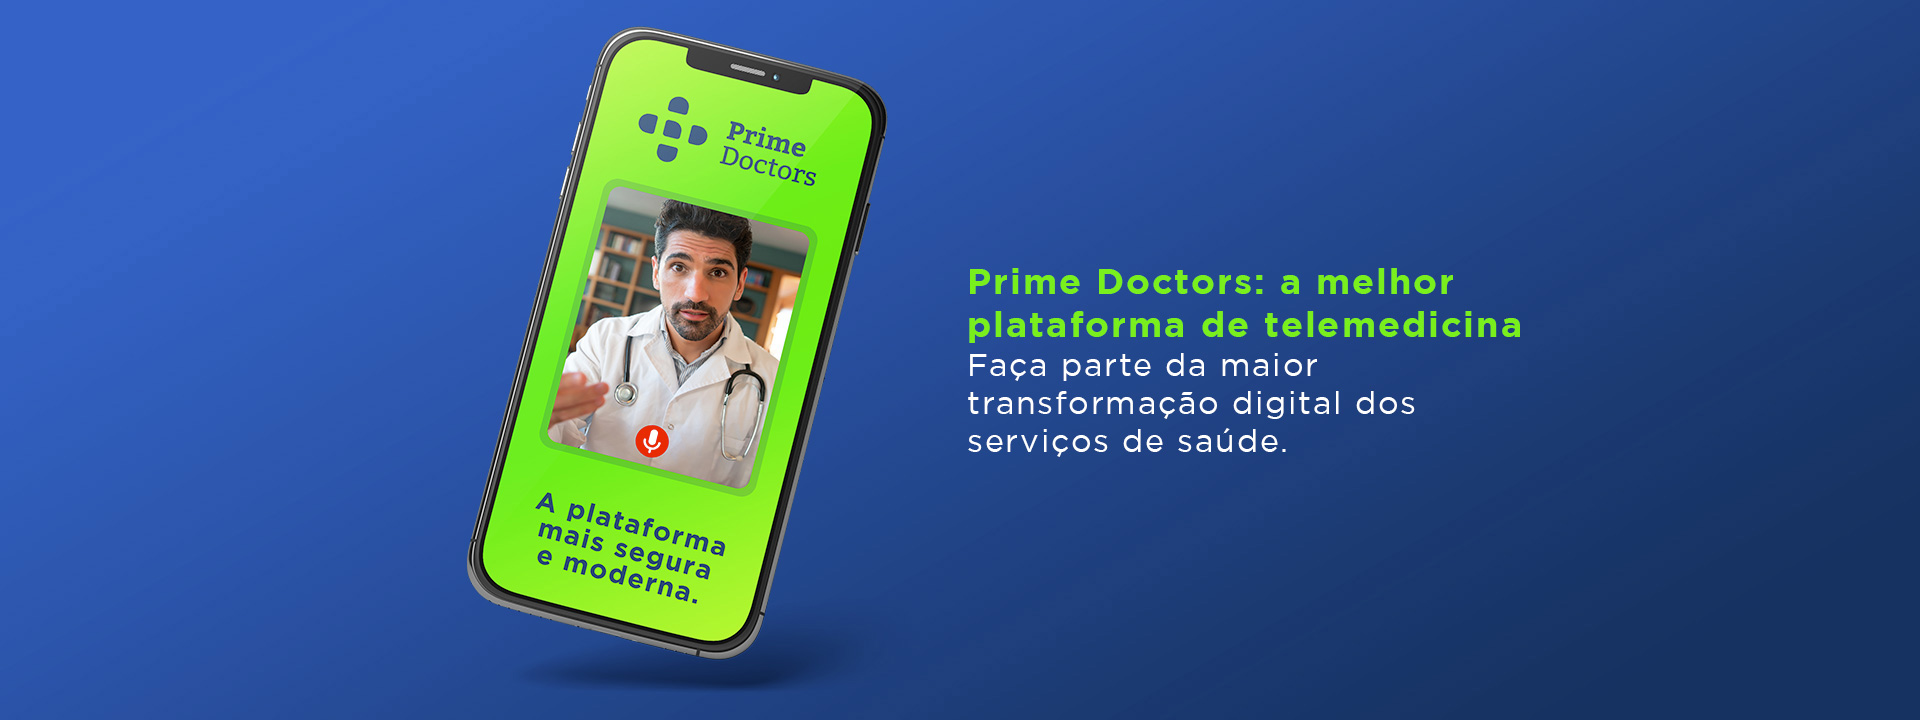 Prime Doctors: a melhor plataforma de telemedicina